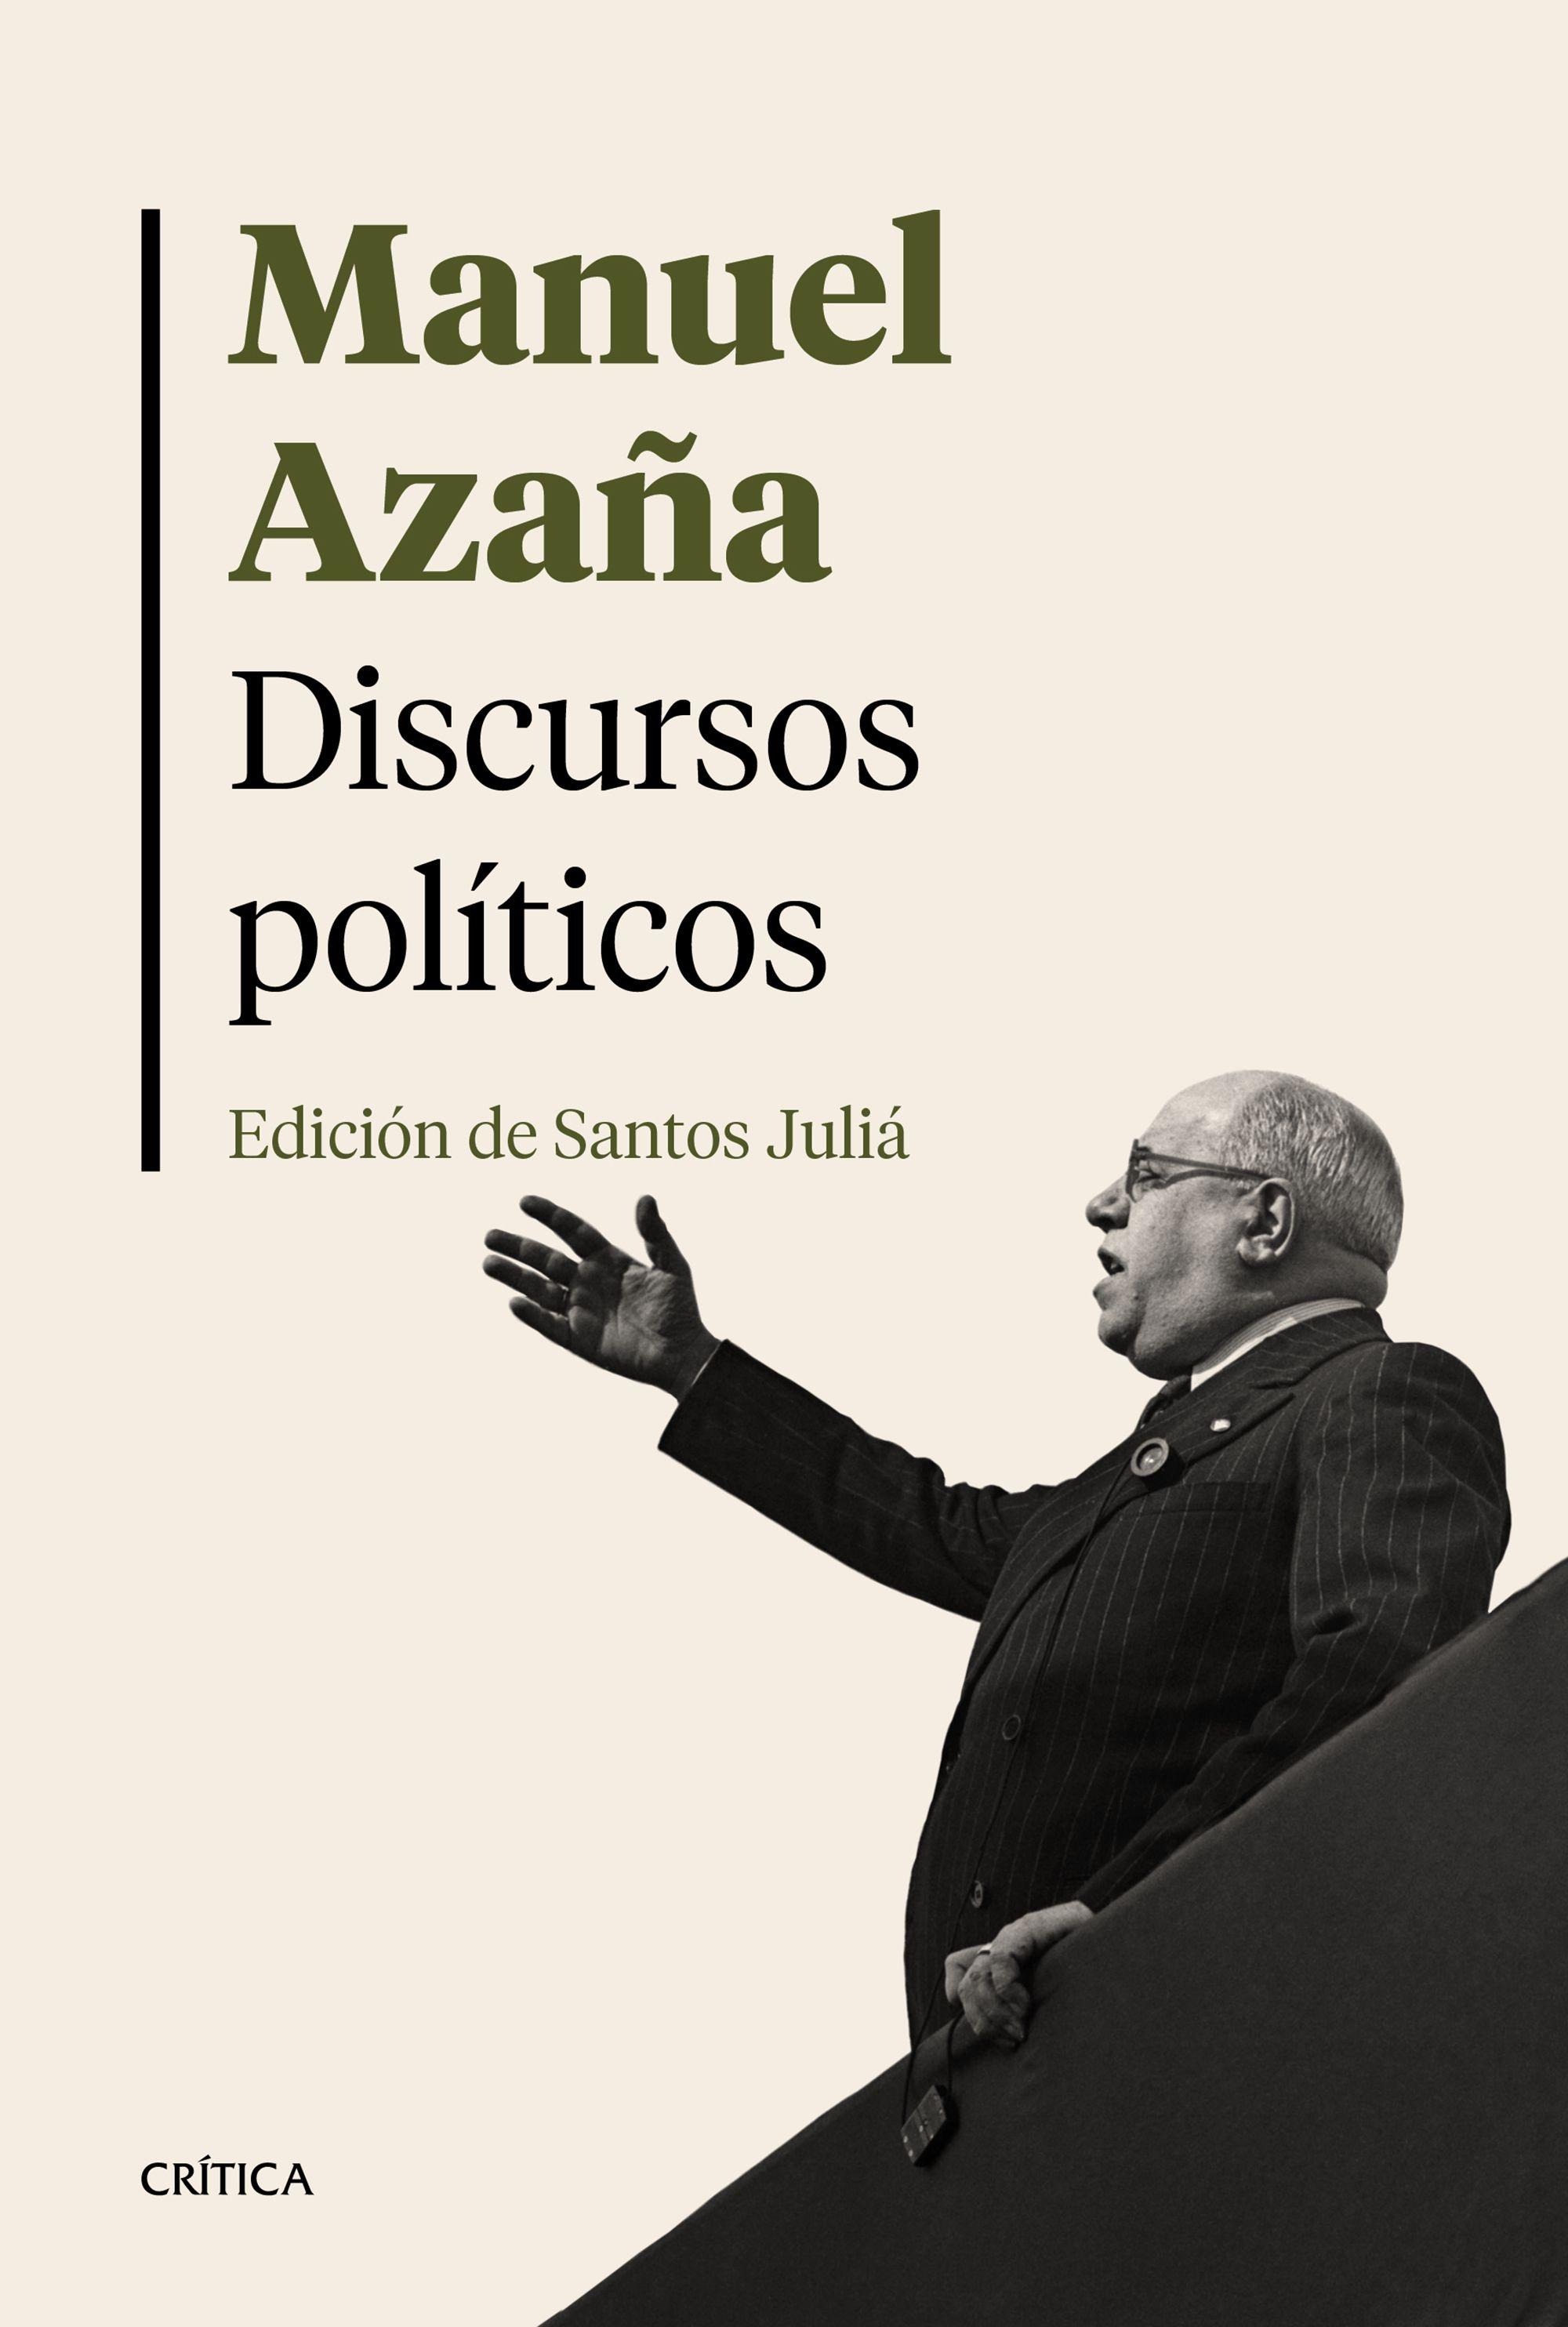 Discursos políticos "Edición de Santos Juliá"